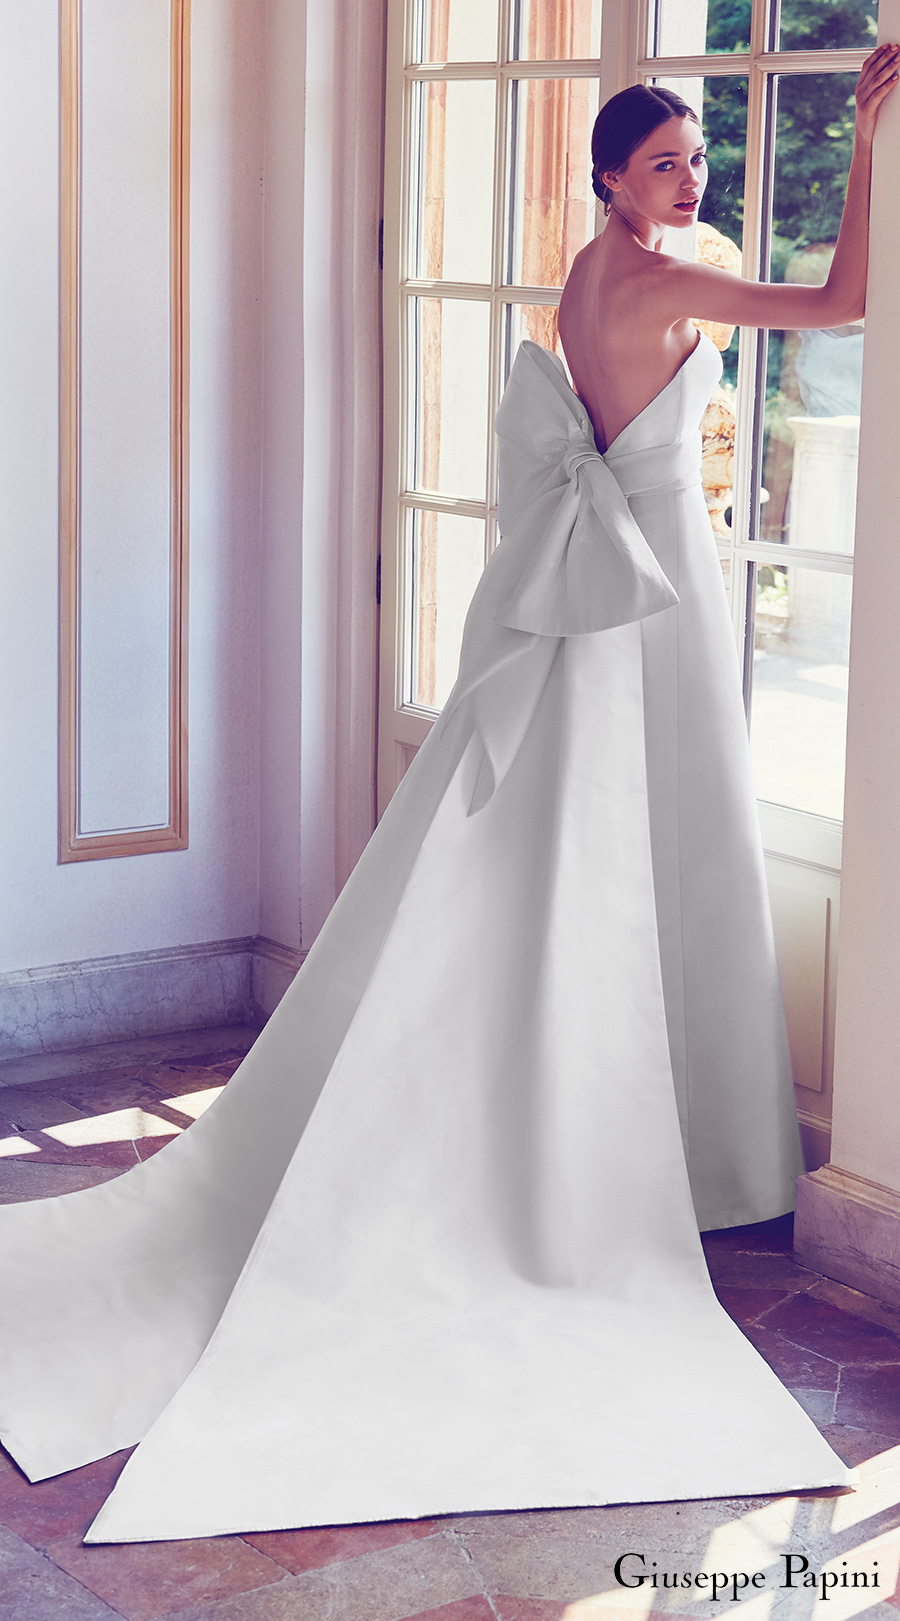 giuseppe papini 2017 (porto venere) strapless minimally embellished a line wedding dress large bow low back mv